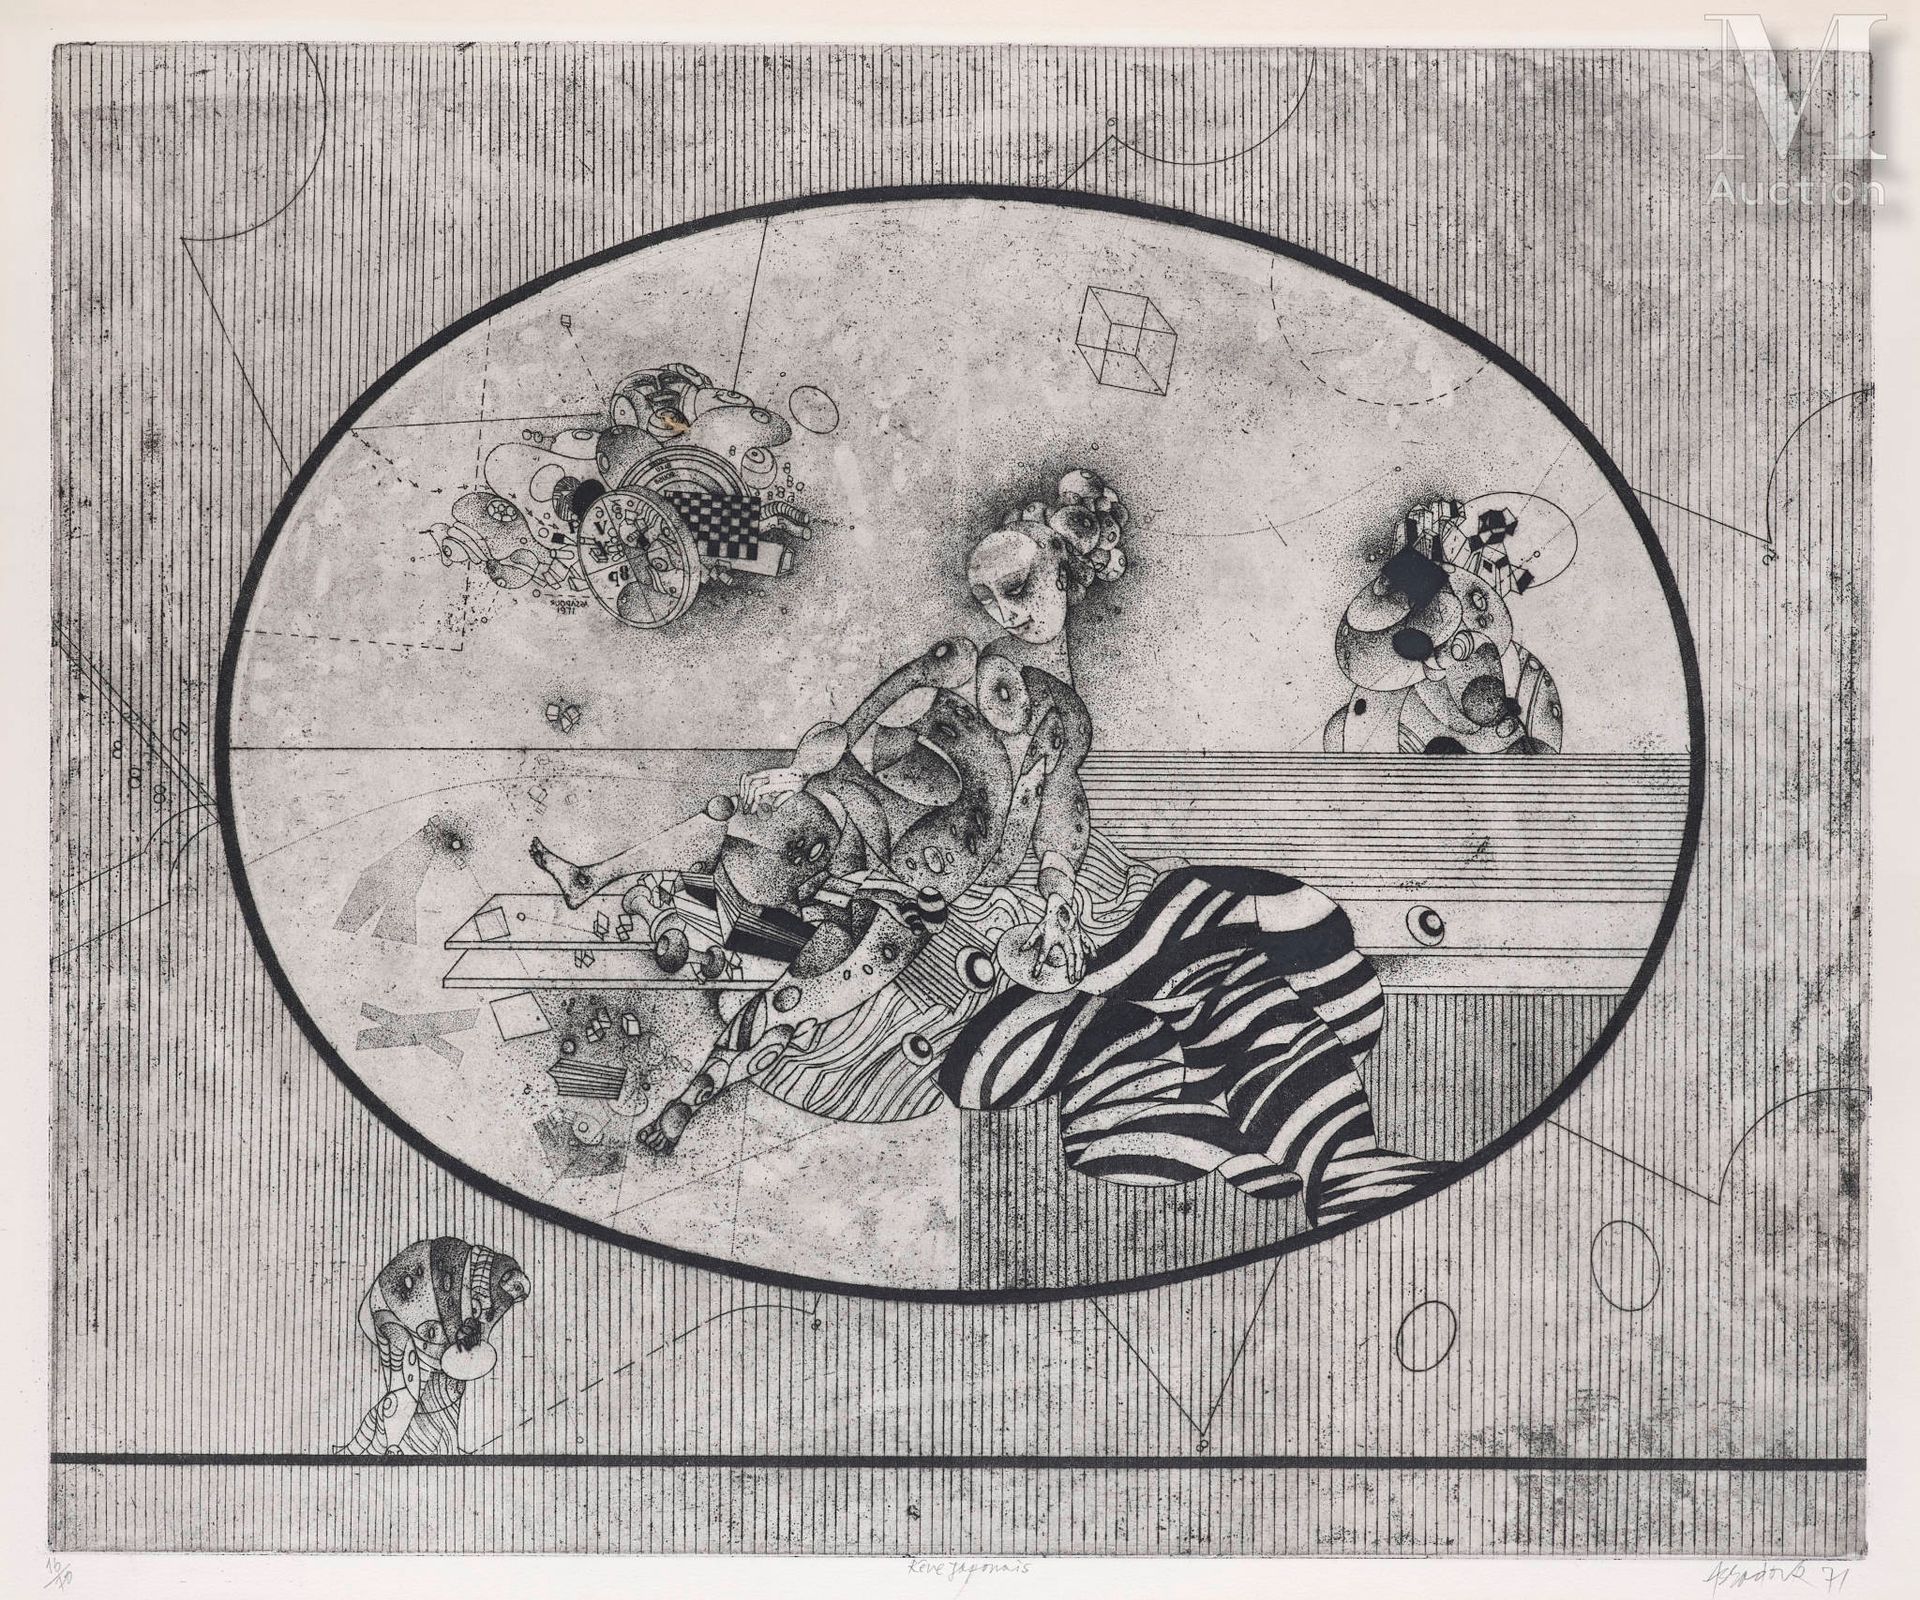 Ⓟ Assadour BEZDIKIAN (Liban, 1943) Rêve Japonais
Lithographie
48,5 x 58,5 cm
réa&hellip;